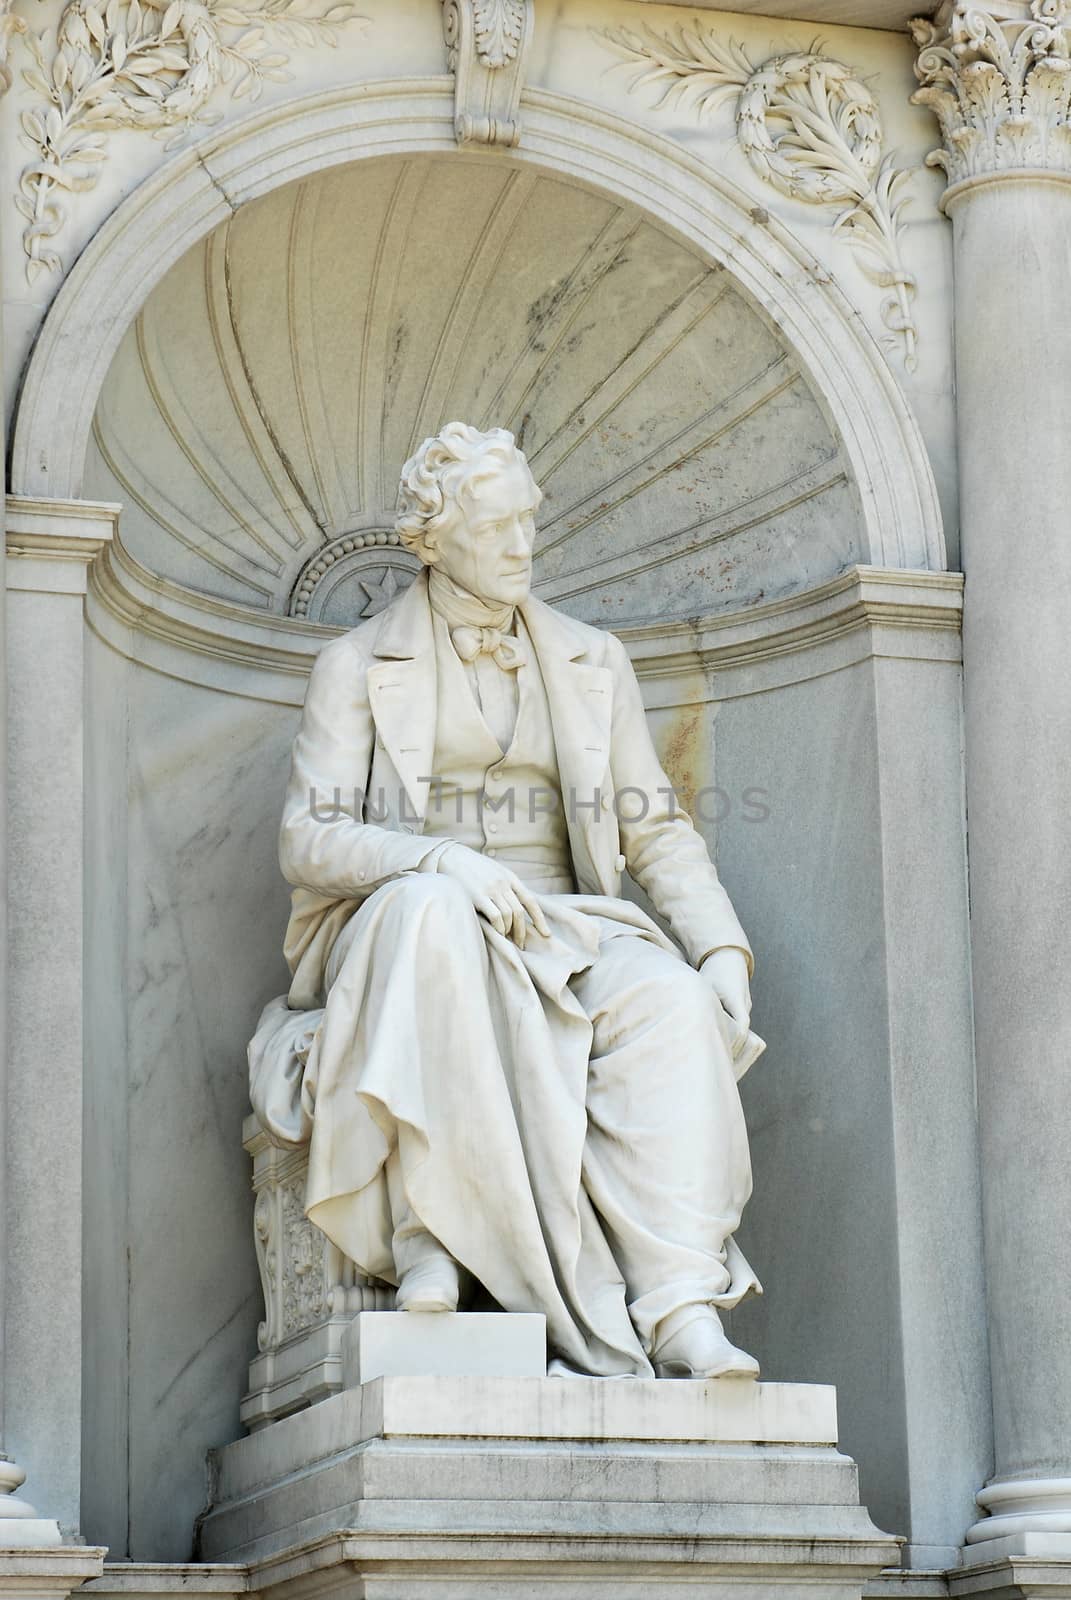 Monument to the famous Austrian writer Franz Grillparzer in the Volksgarten, Vienna